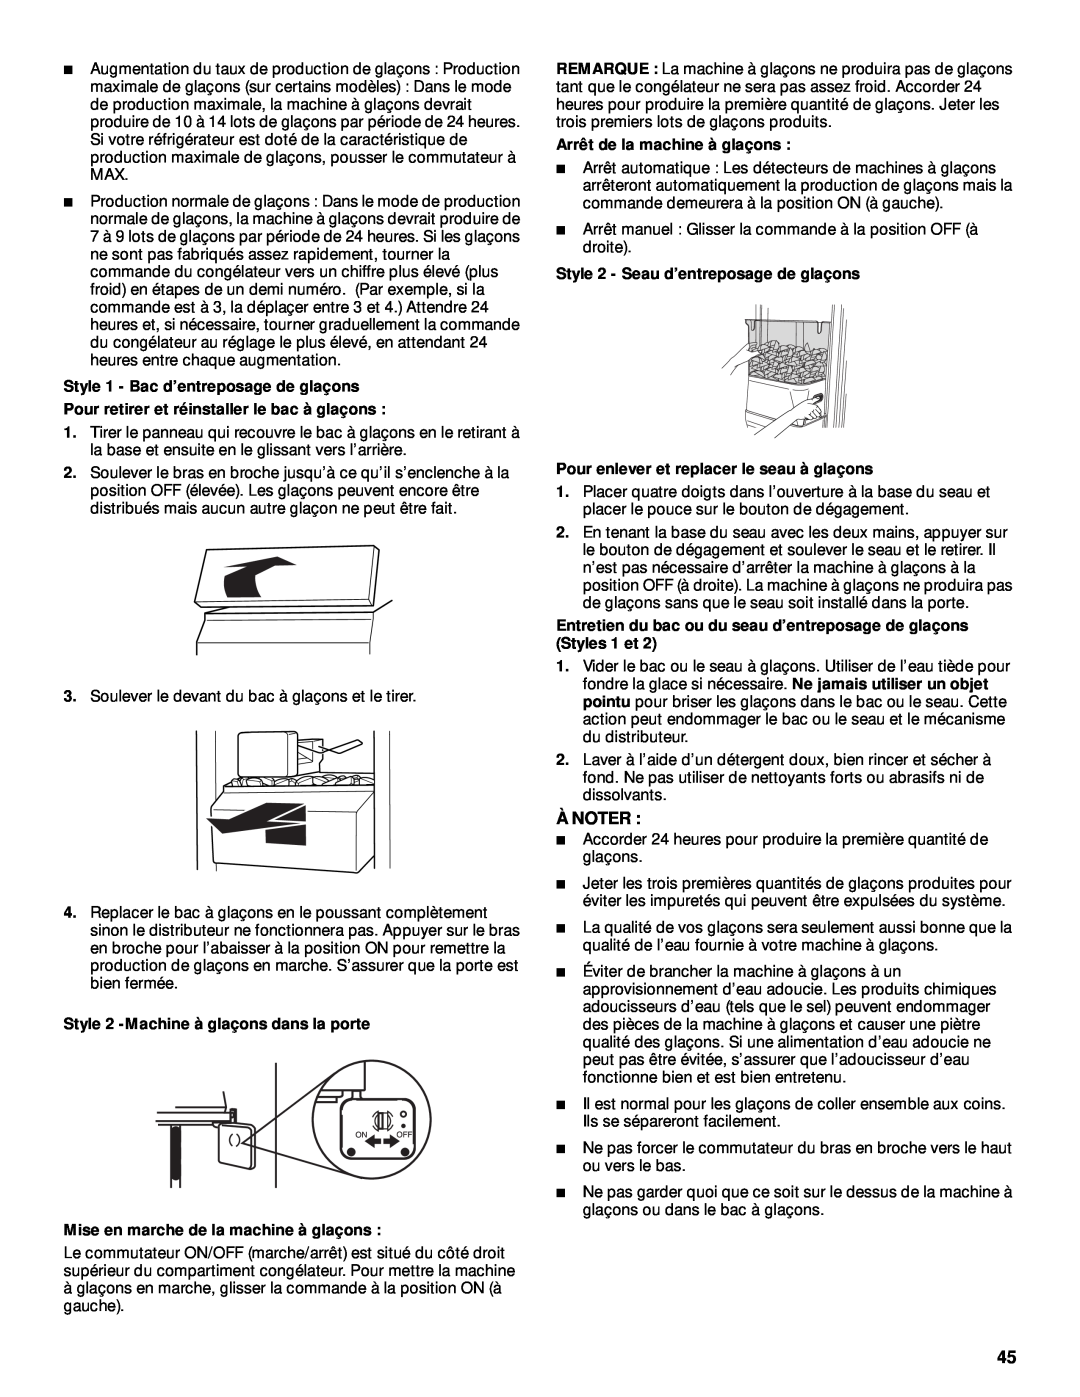 Whirlpool ED25RFXFB03 manual À Noter, Style 1 - Bac d’entreposage de glaçons, Pour retirer et réinstaller le bac à glaçons 